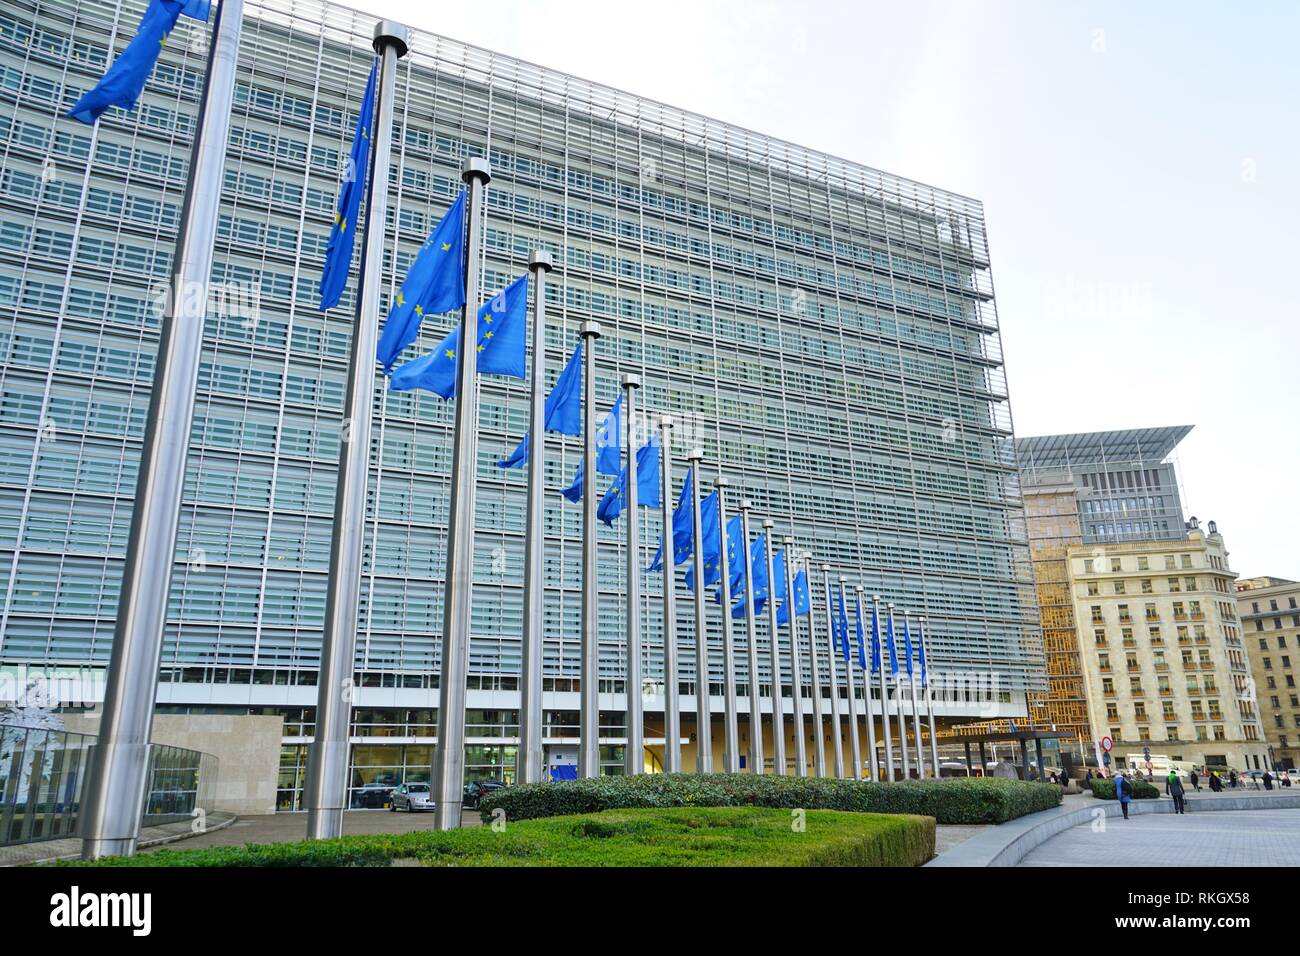 Bruselas, Bélgica -Vista del edificio Berlaymont, sede de la Comisión Europea de la Unión Europea (UE) con sede en Bruselas, Bélgica. Foto de stock